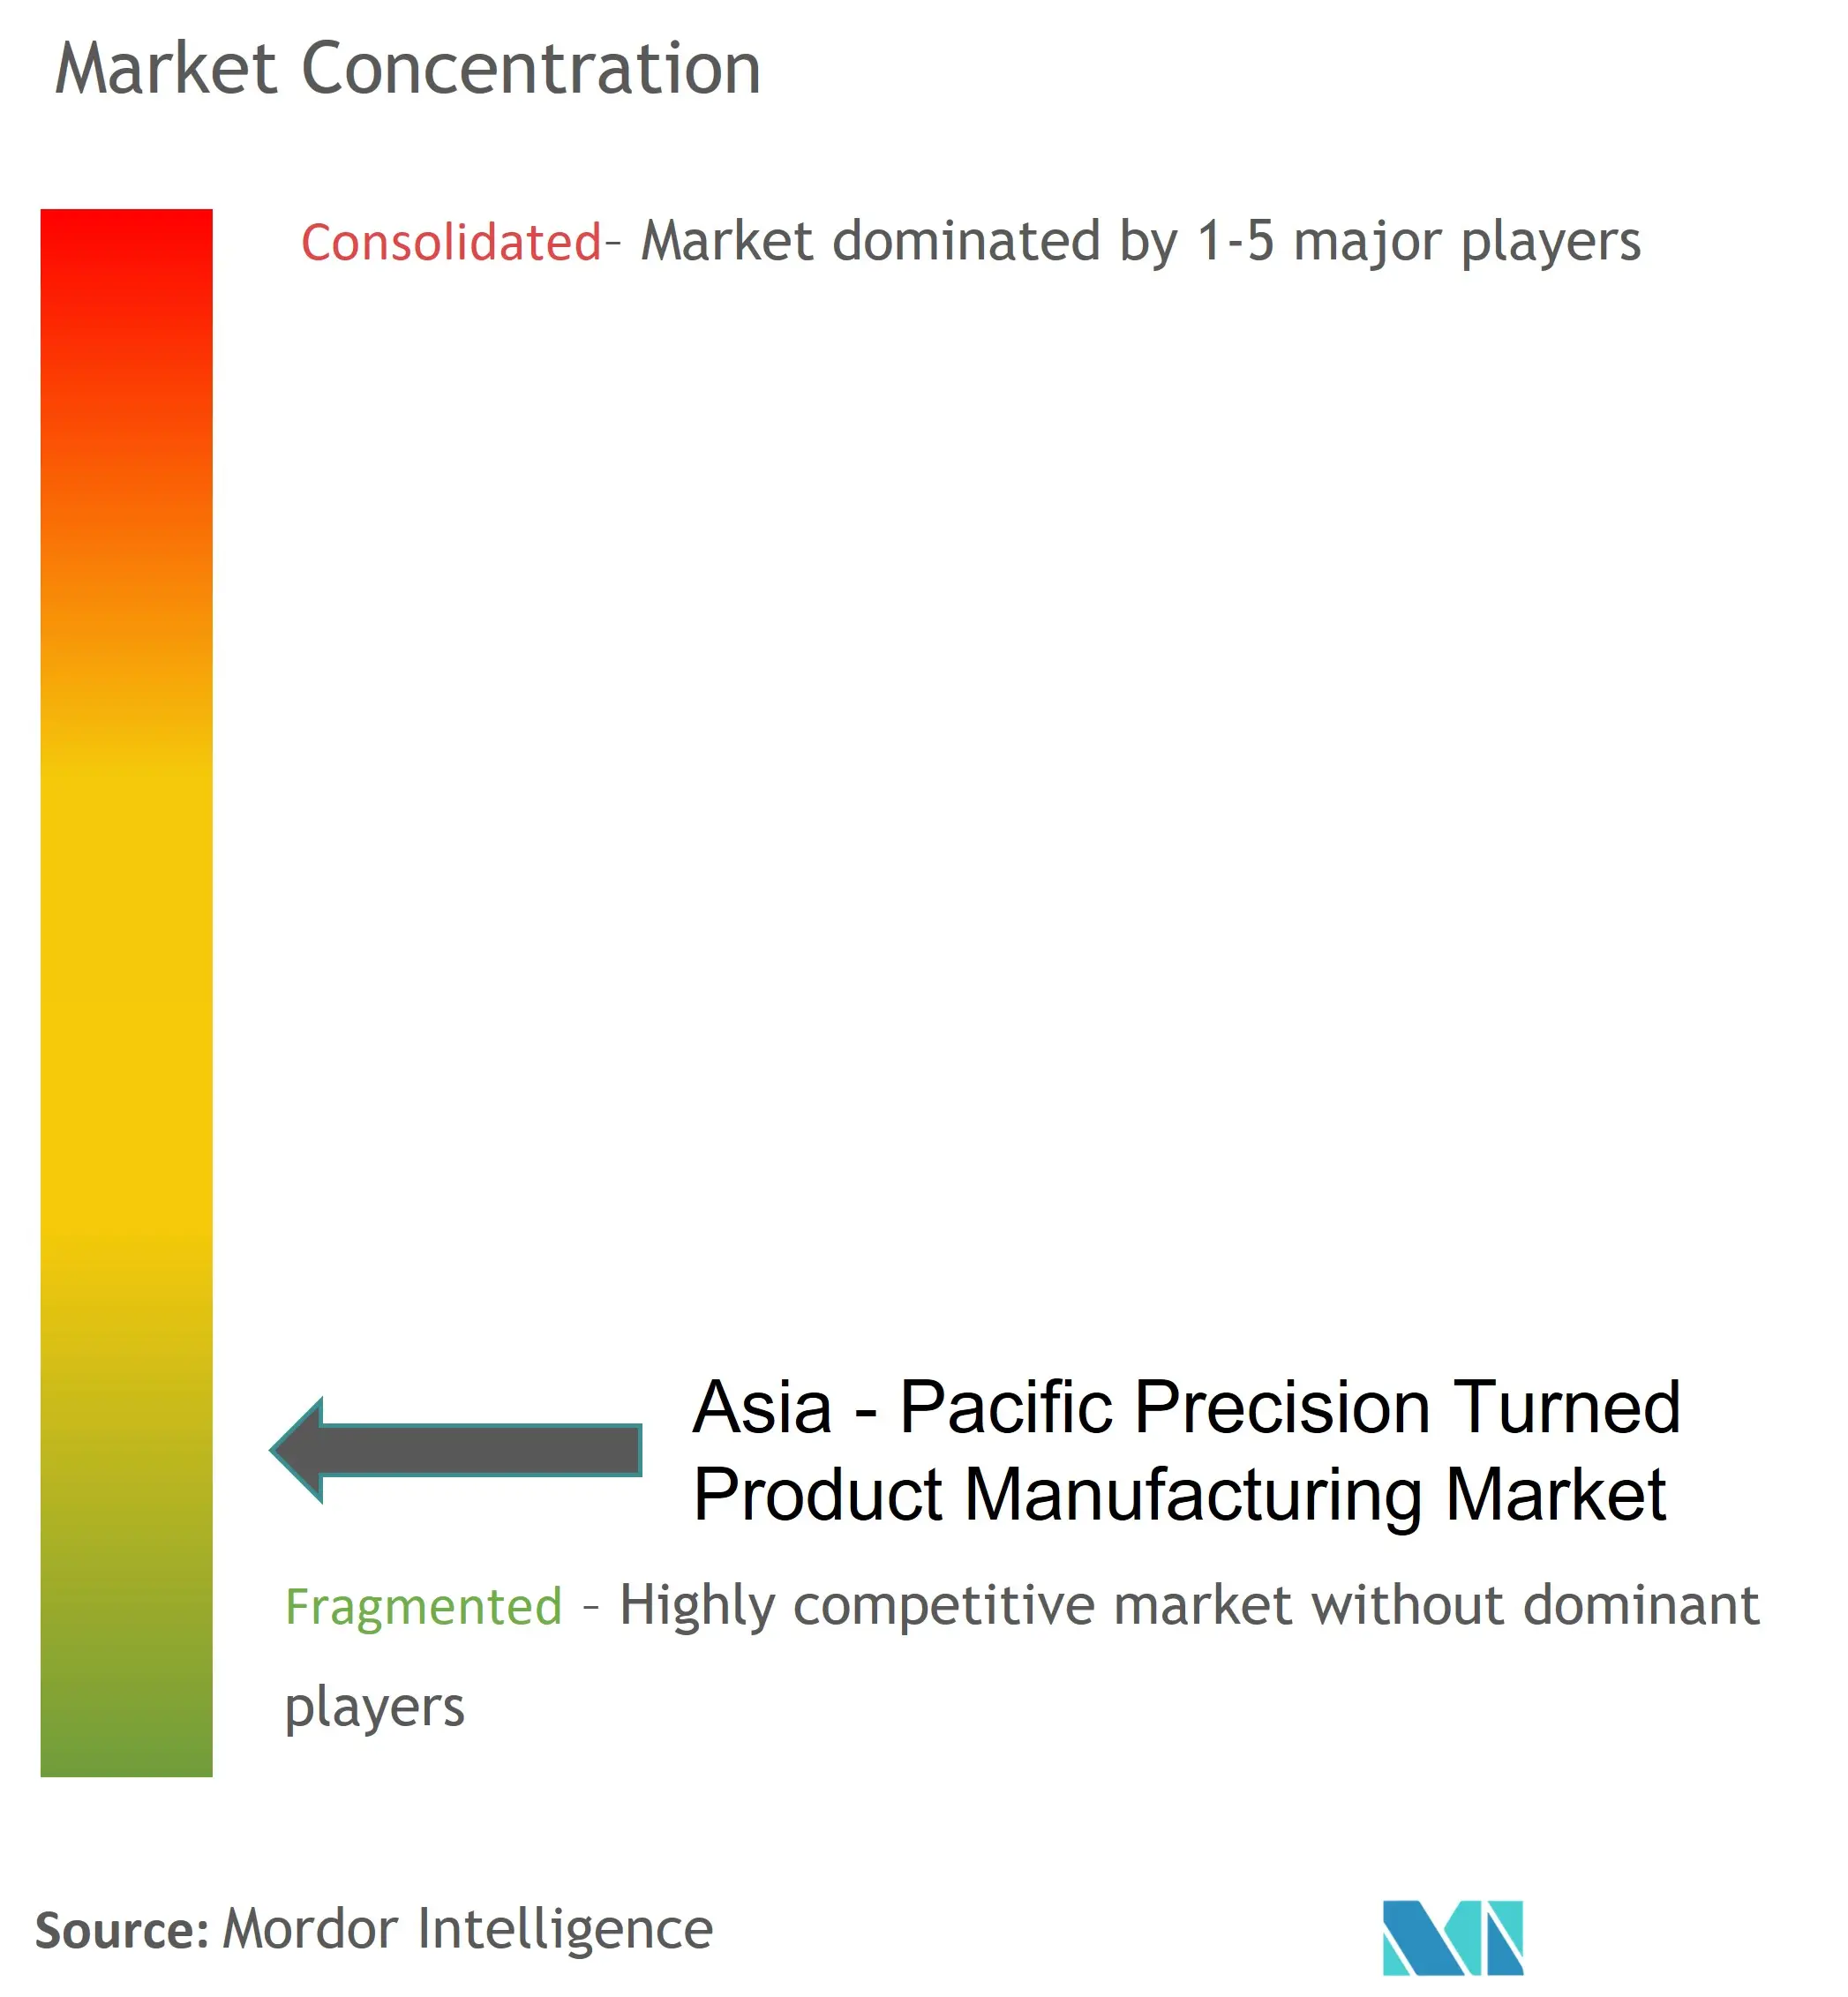 アジア太平洋地域の精密旋削製品製造市場集中度